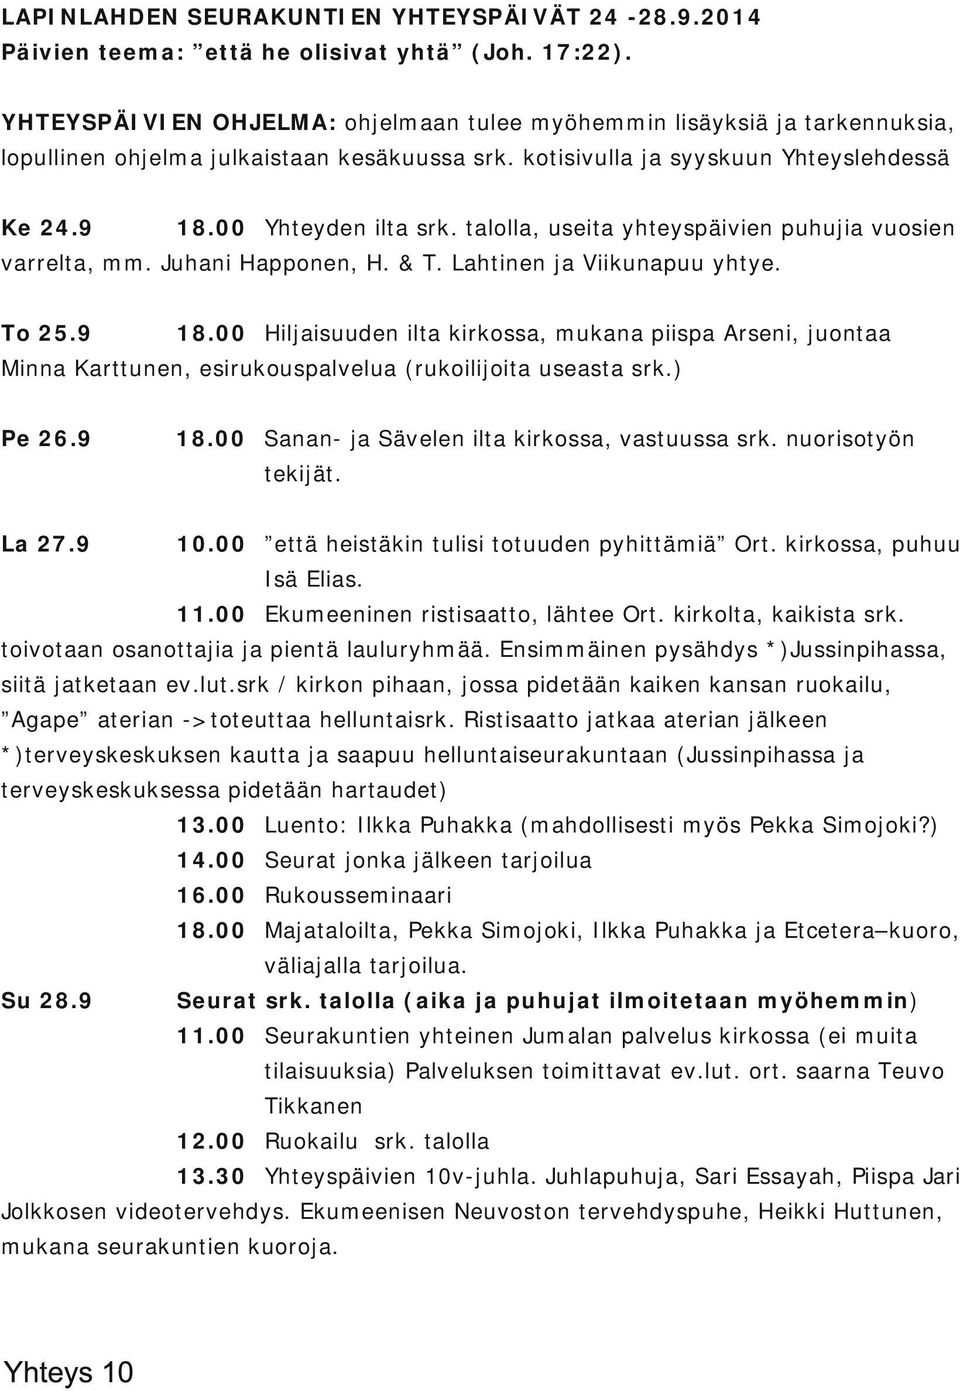 talolla, useita yhteyspäivien puhujia vuosien varrelta, mm. Juhani Happonen, H. & T. Lahtinen ja Viikunapuu yhtye. To 25.9 18.